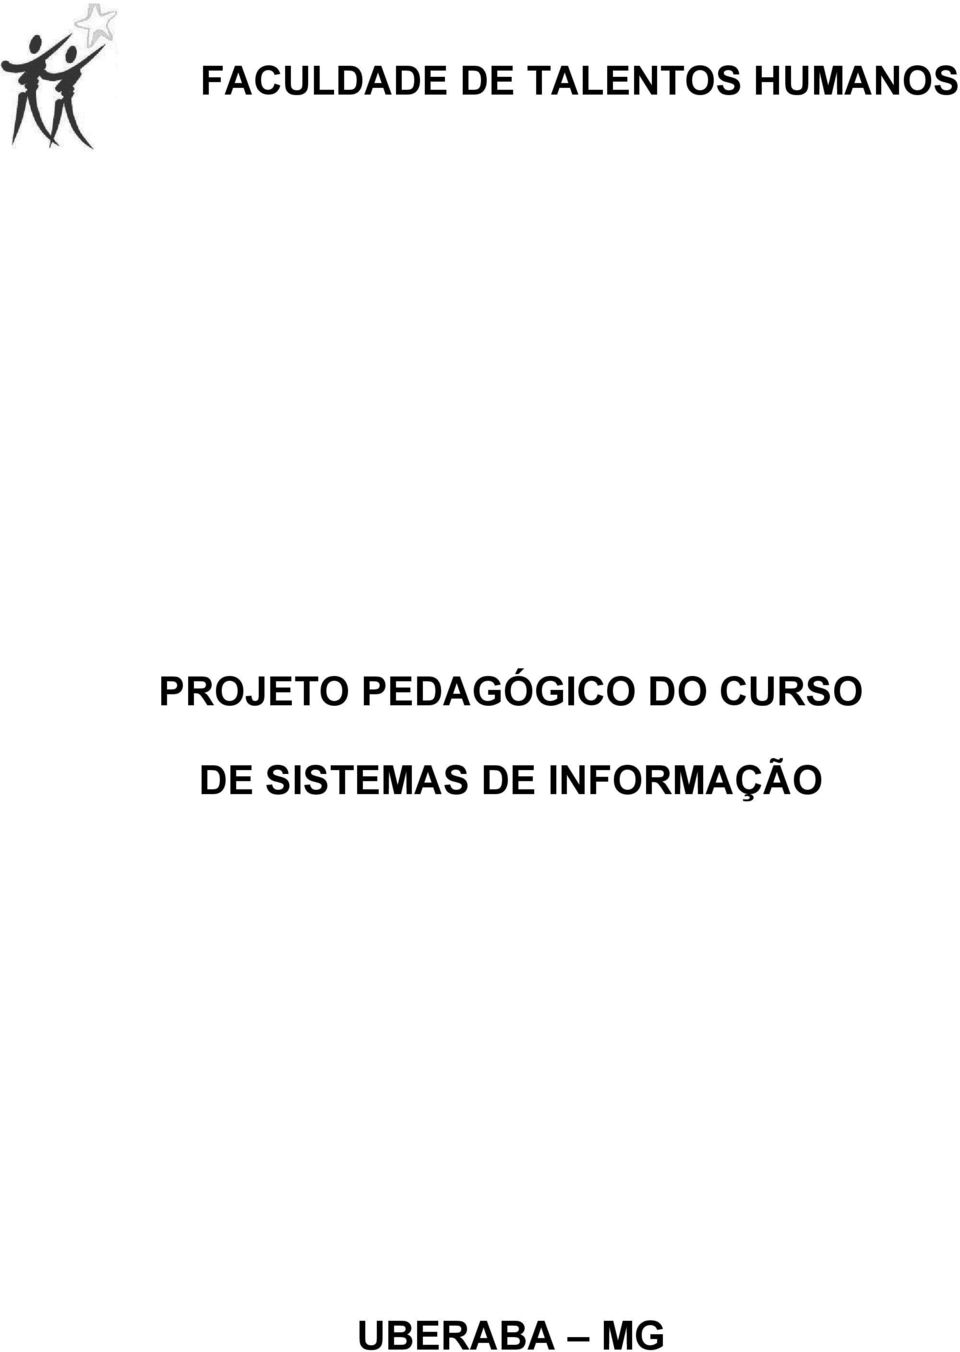 PEDAGÓGICO DO CURSO DE